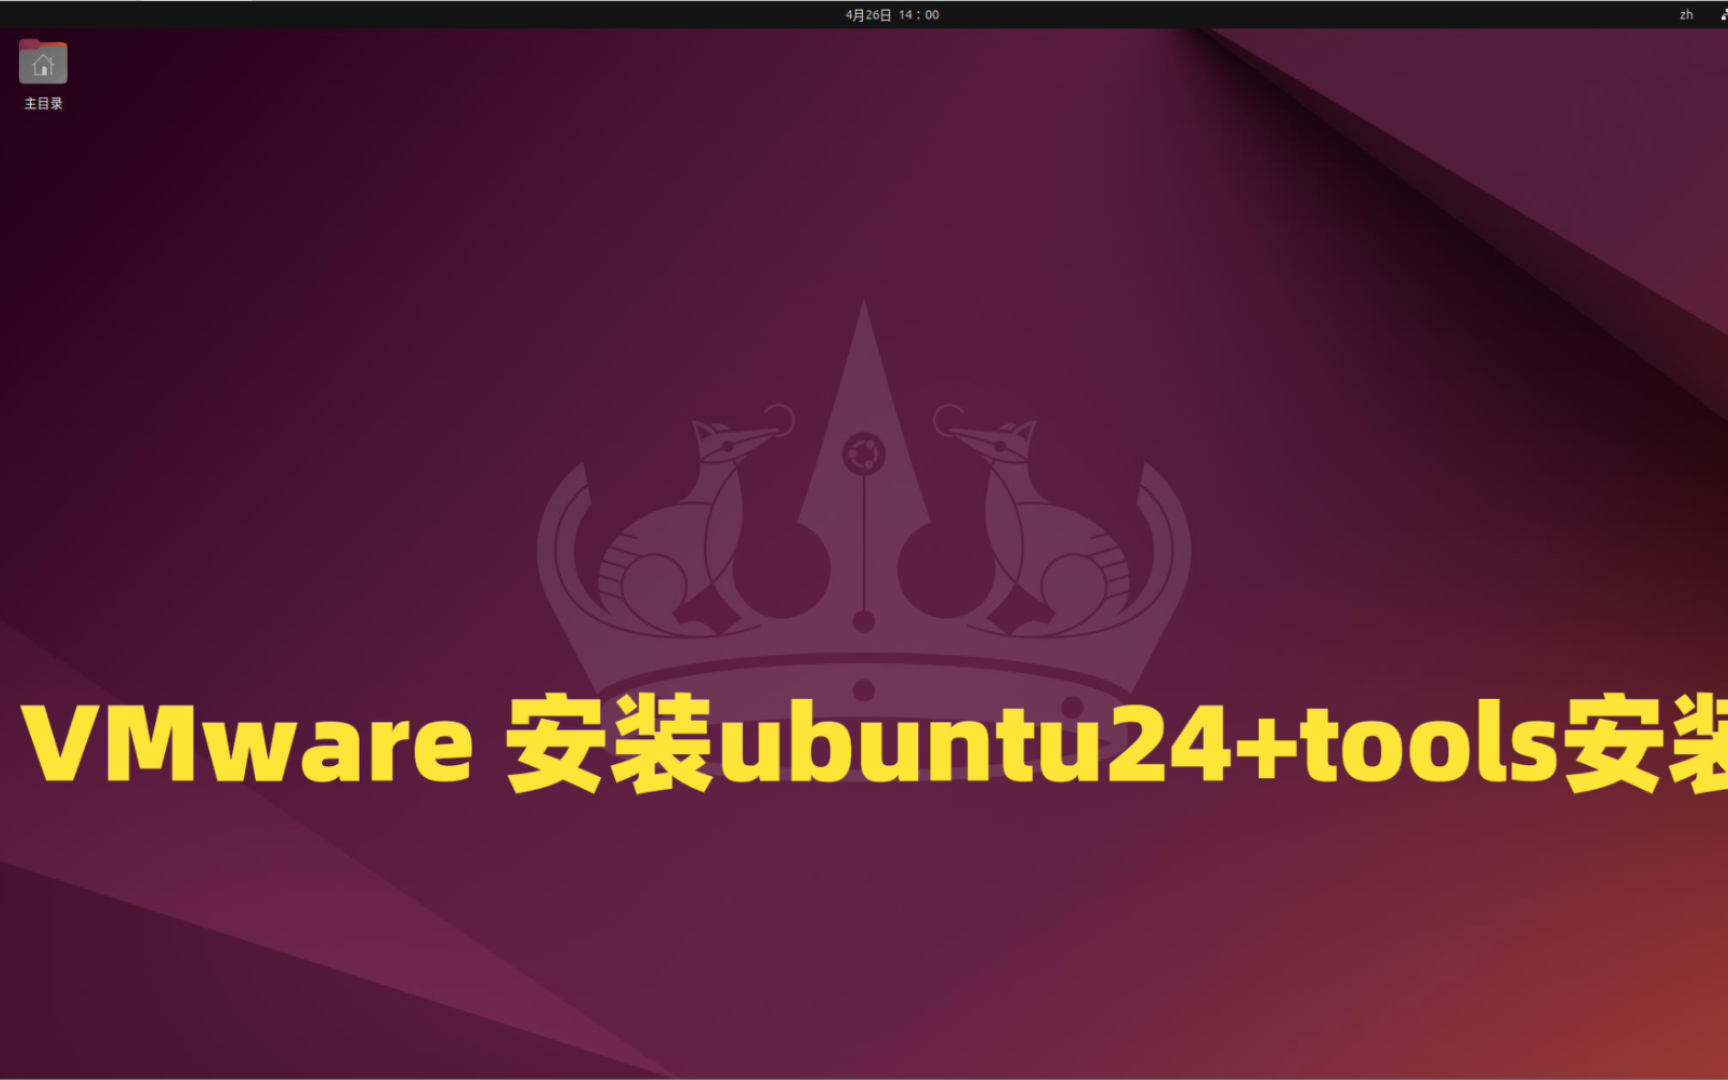 使用虚拟机安装ubuntu最新版ubuntu24+tools